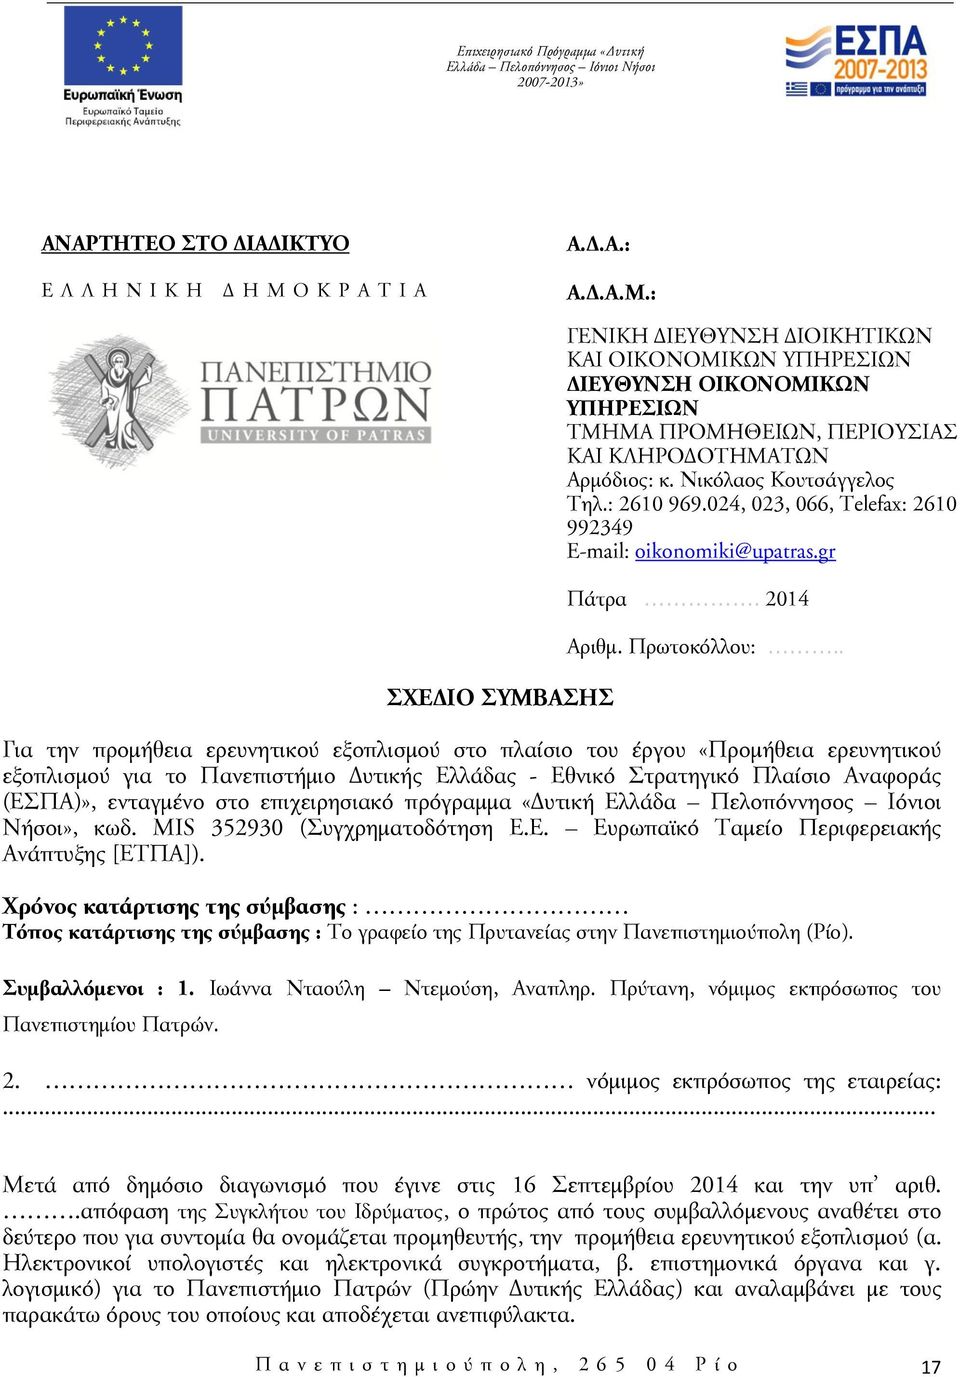 Νικόλαος Κουτσάγγελος Τηλ.: 2610 969.024, 023, 066, Telefax: 2610 992349 E-mail: oikonomiki@upatras.gr Πάτρα. 2014 Αριθμ. Πρωτοκόλλου:.